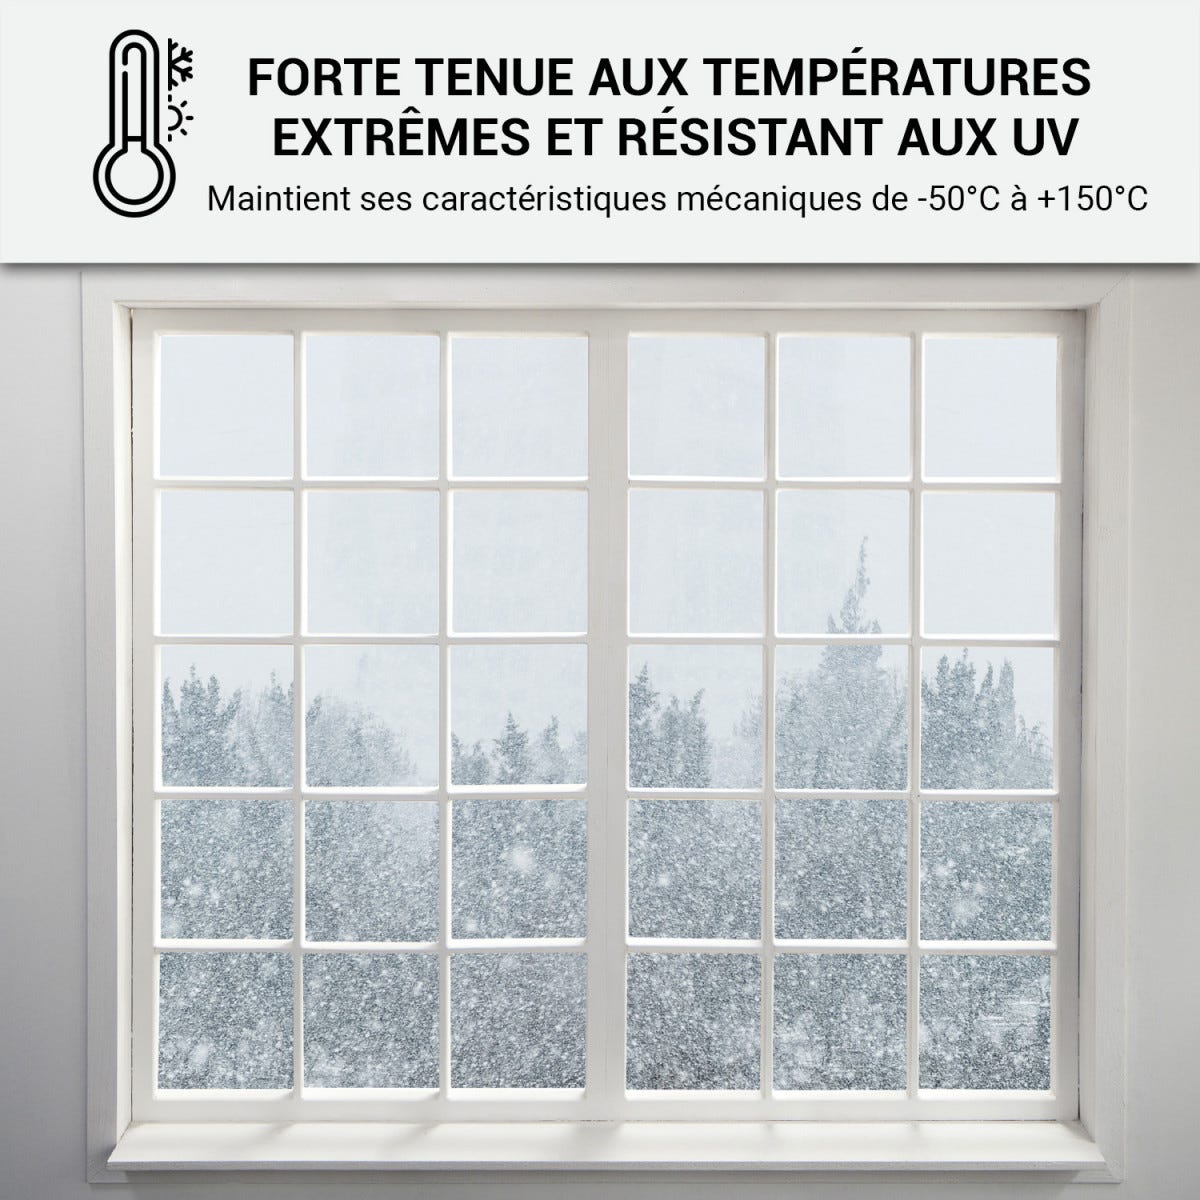 Mastic Silicone intérieur / extérieur pour fenêtres et menuiseries : ARCAMASTIC BATIMENT Gris Anthracite - RAL 7016 - 300 ml x 12ARCANE INDUSTRIES 3